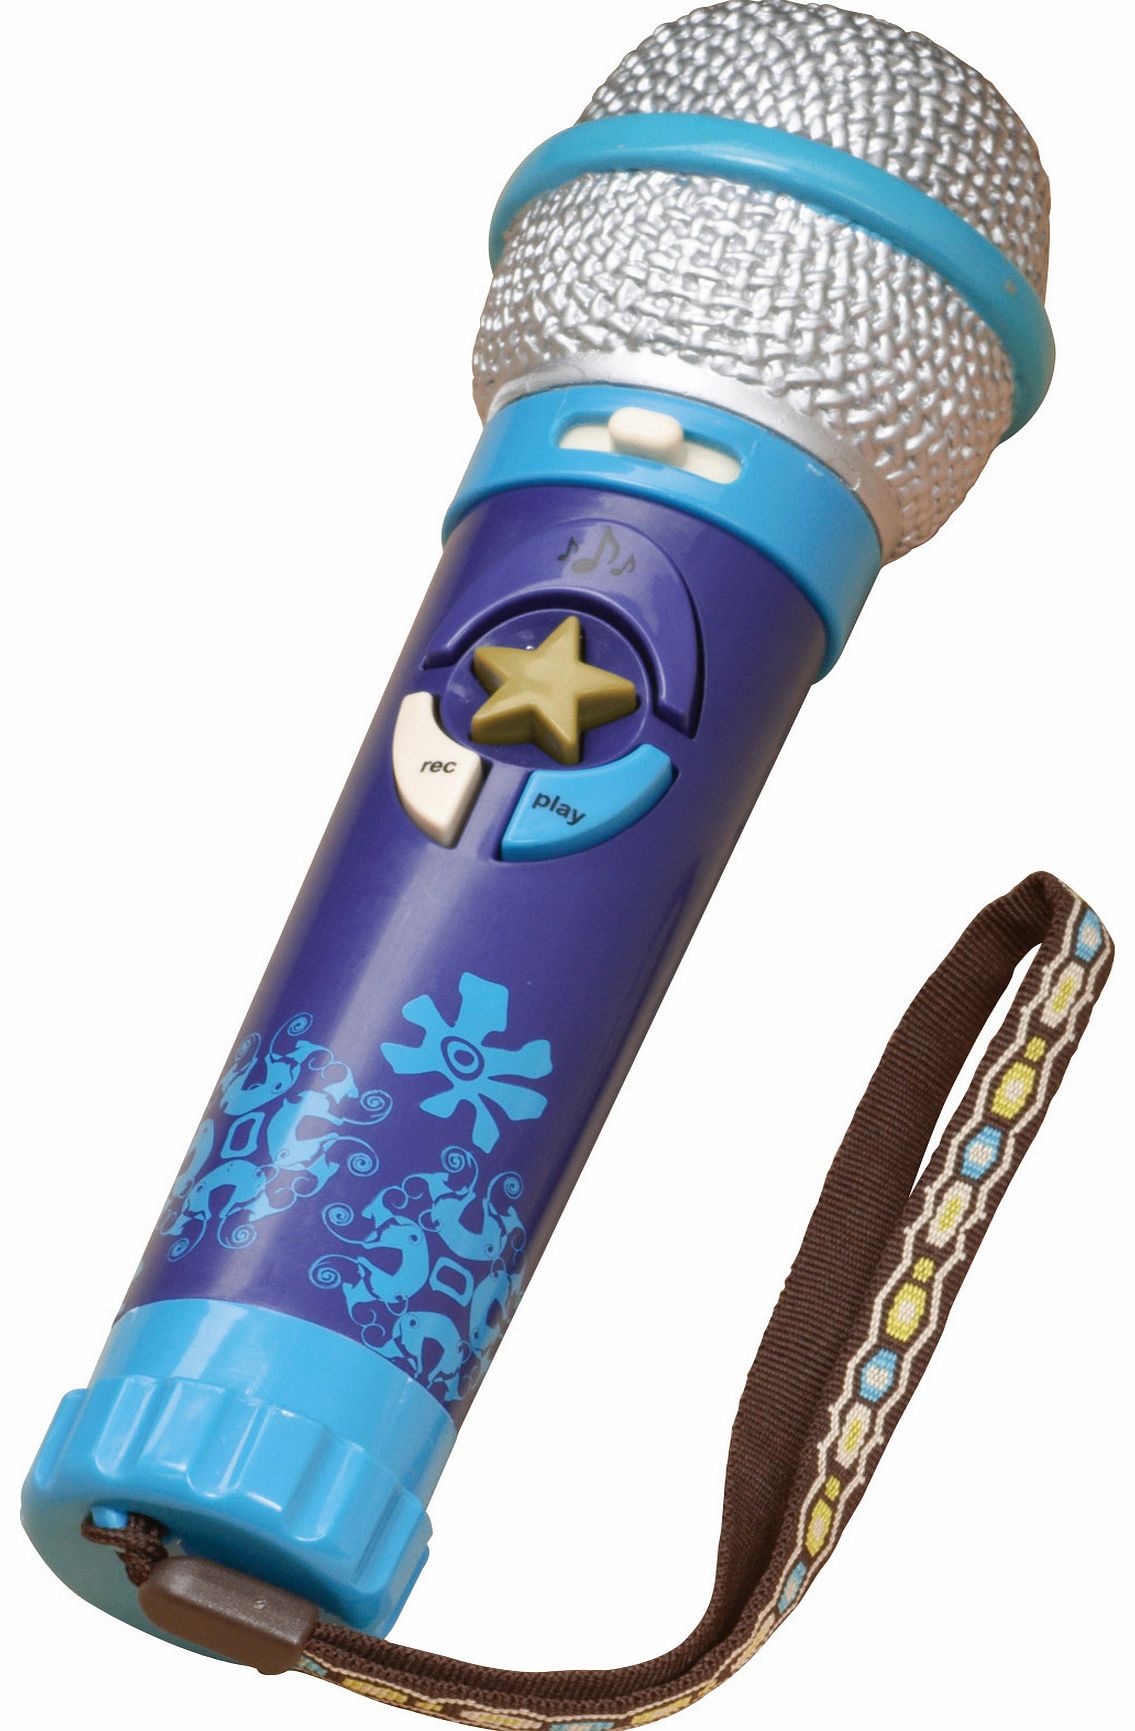 Okeideoki Play Microphone